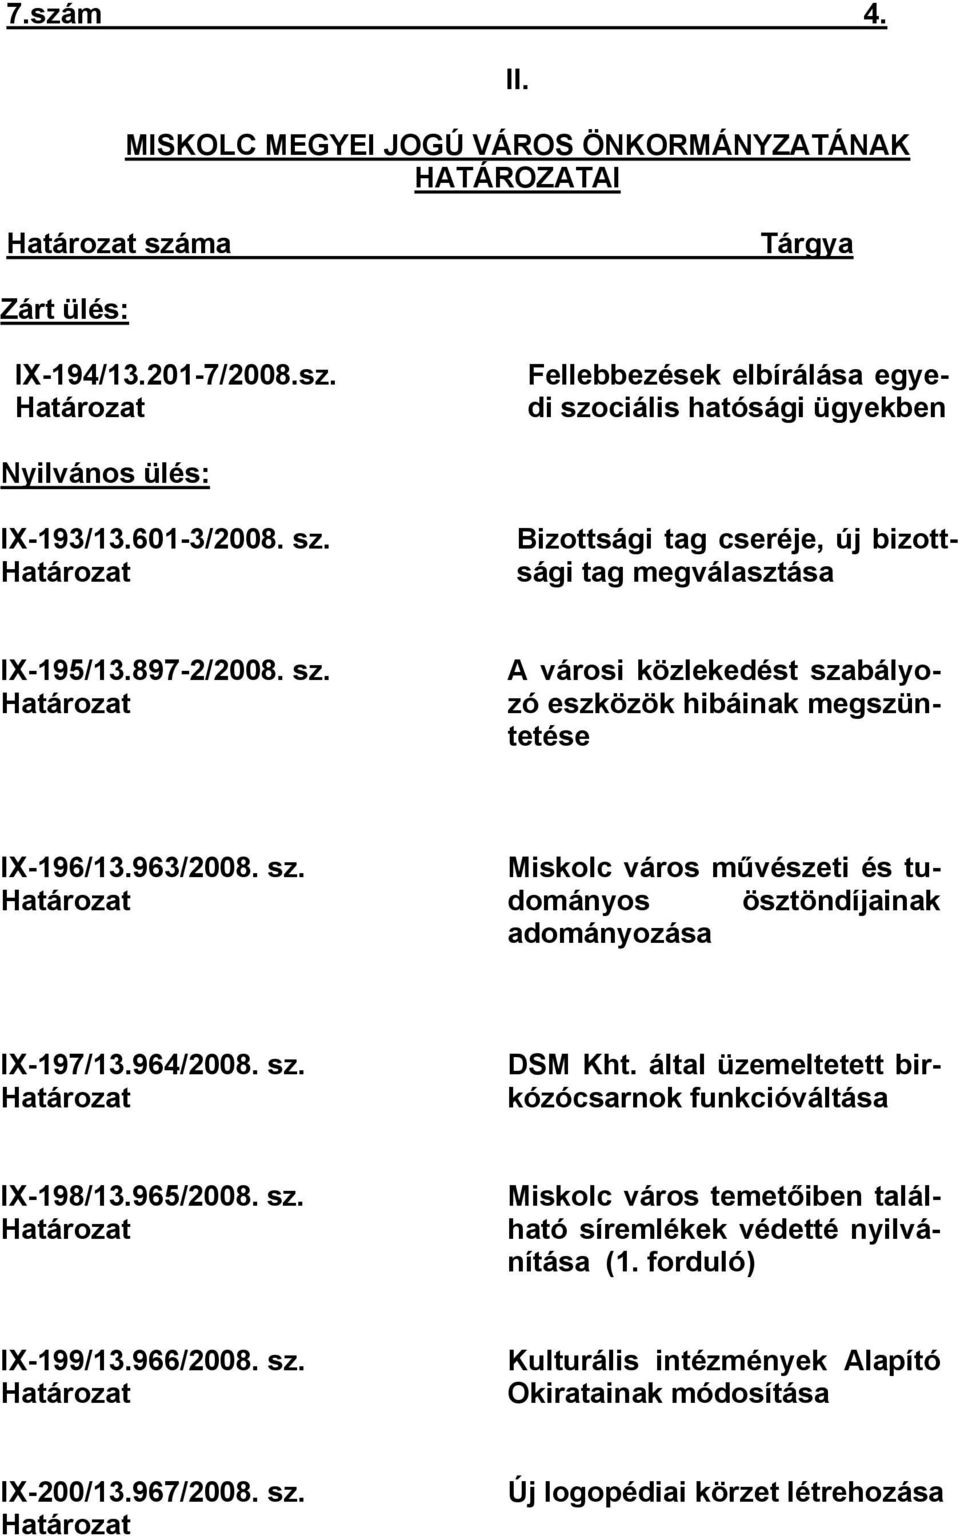 963/2008. sz. Határozat Miskolc város művészeti és tudományos ösztöndíjainak adományozása IX-197/13.964/2008. sz. Határozat DSM Kht. által üzemeltetett birkózócsarnok funkcióváltása IX-198/13.